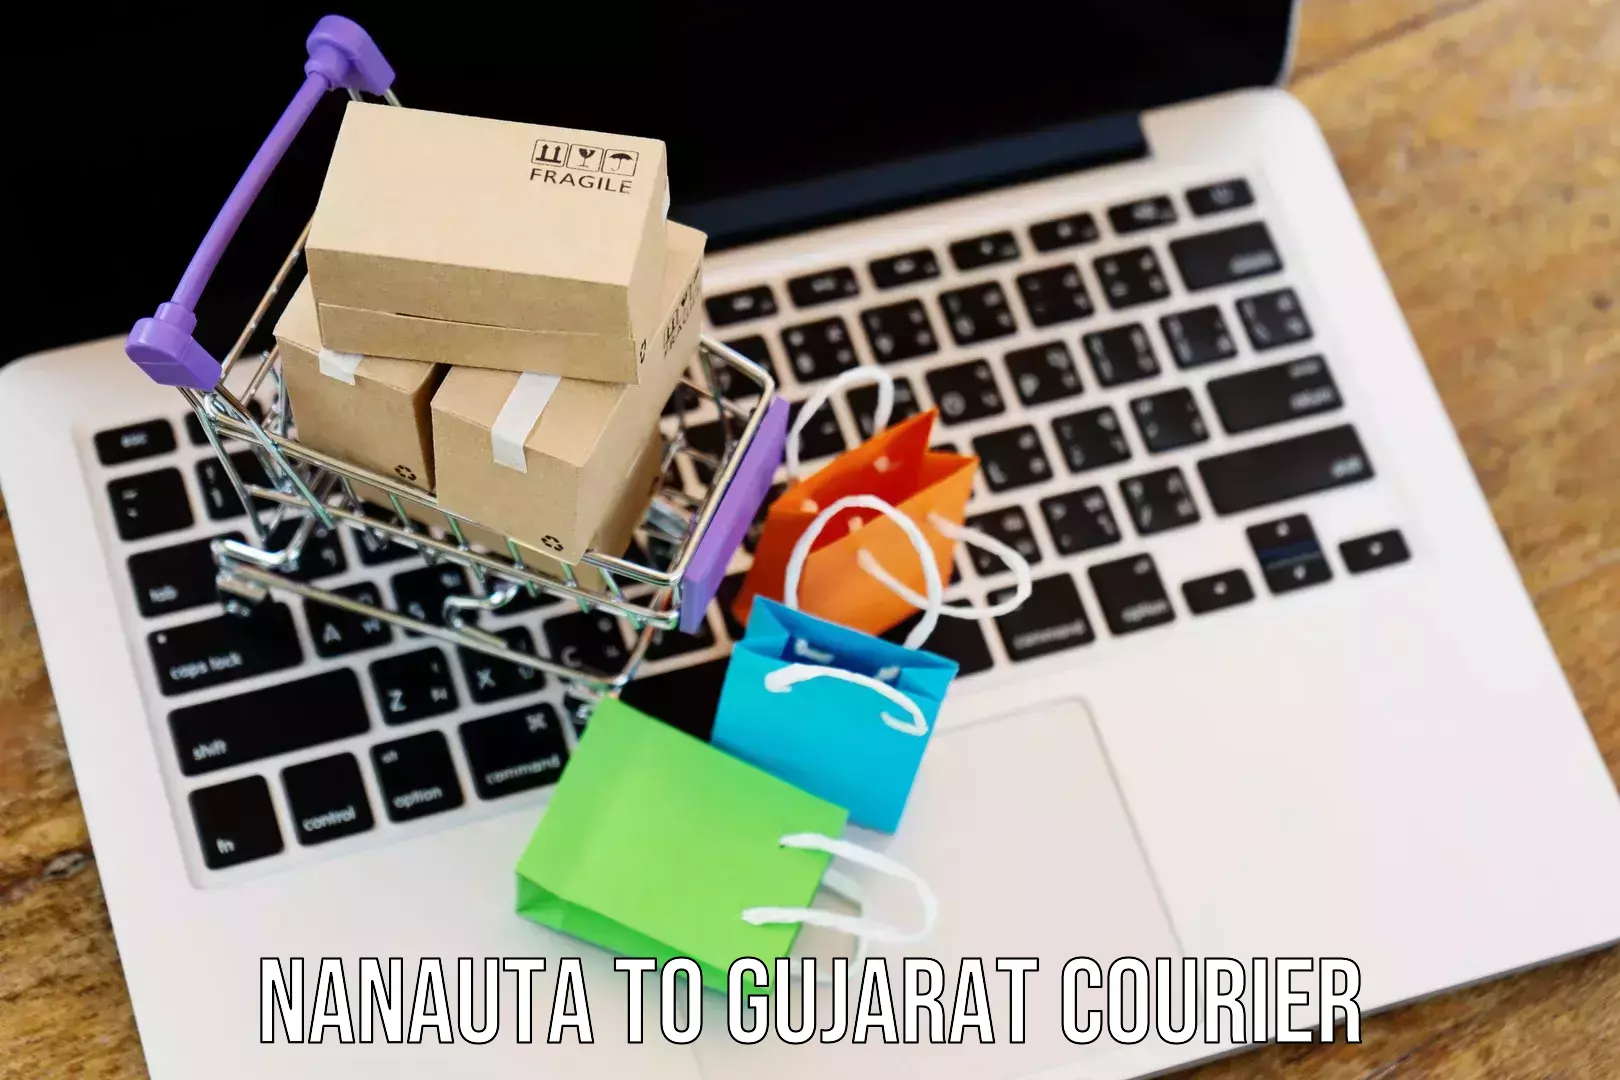 Custom courier packaging Nanauta to Gujarat